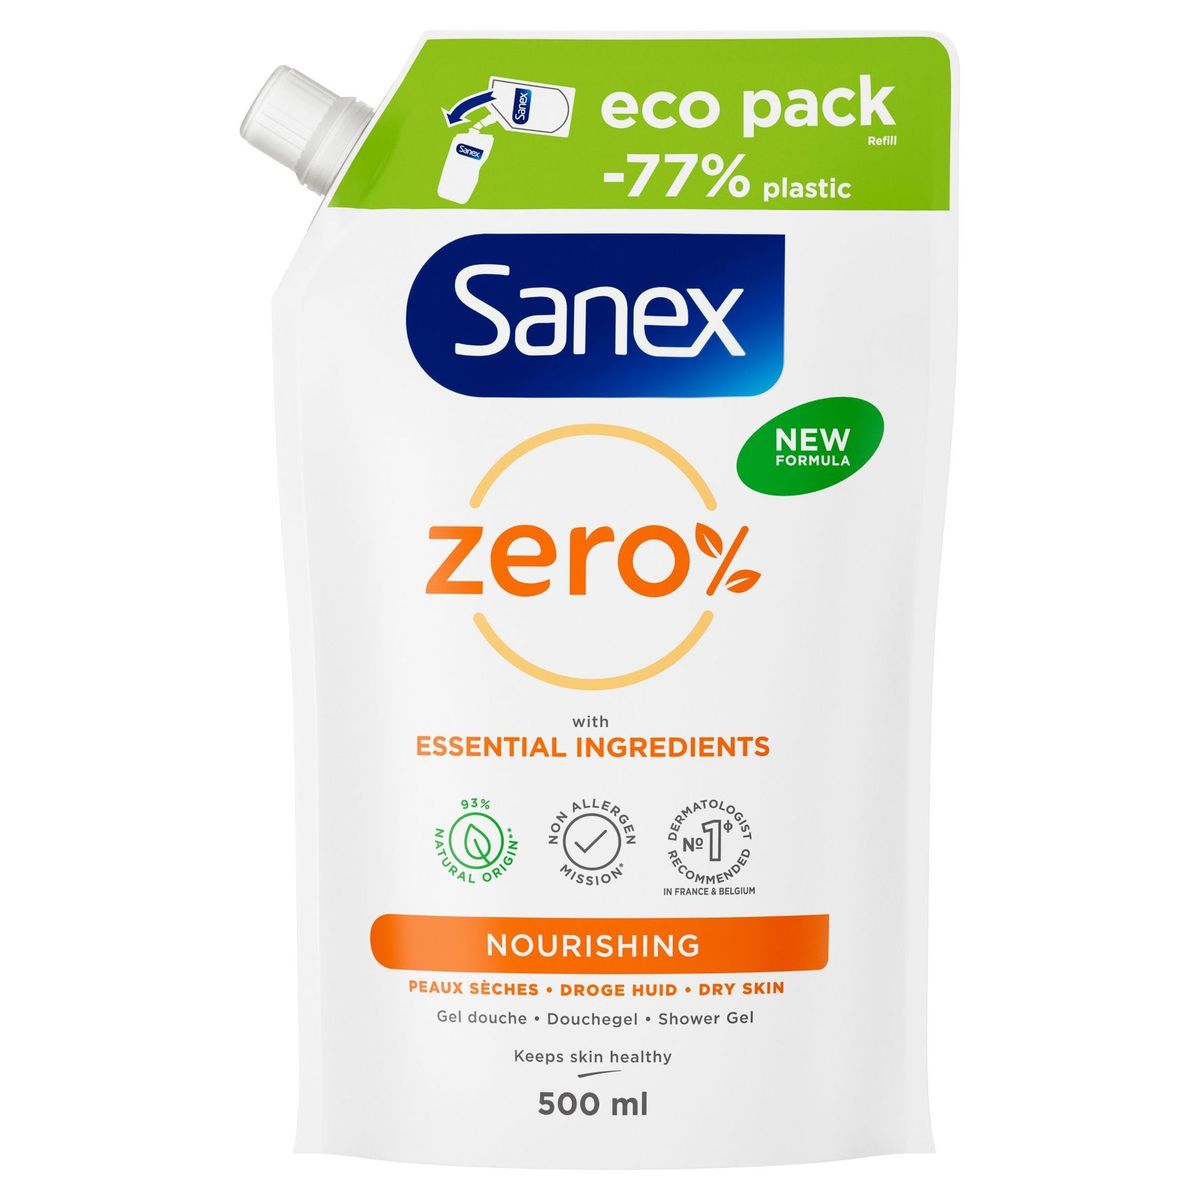 Navulling voedende douchegel Sanex Zero% voor droge huid {500ml}